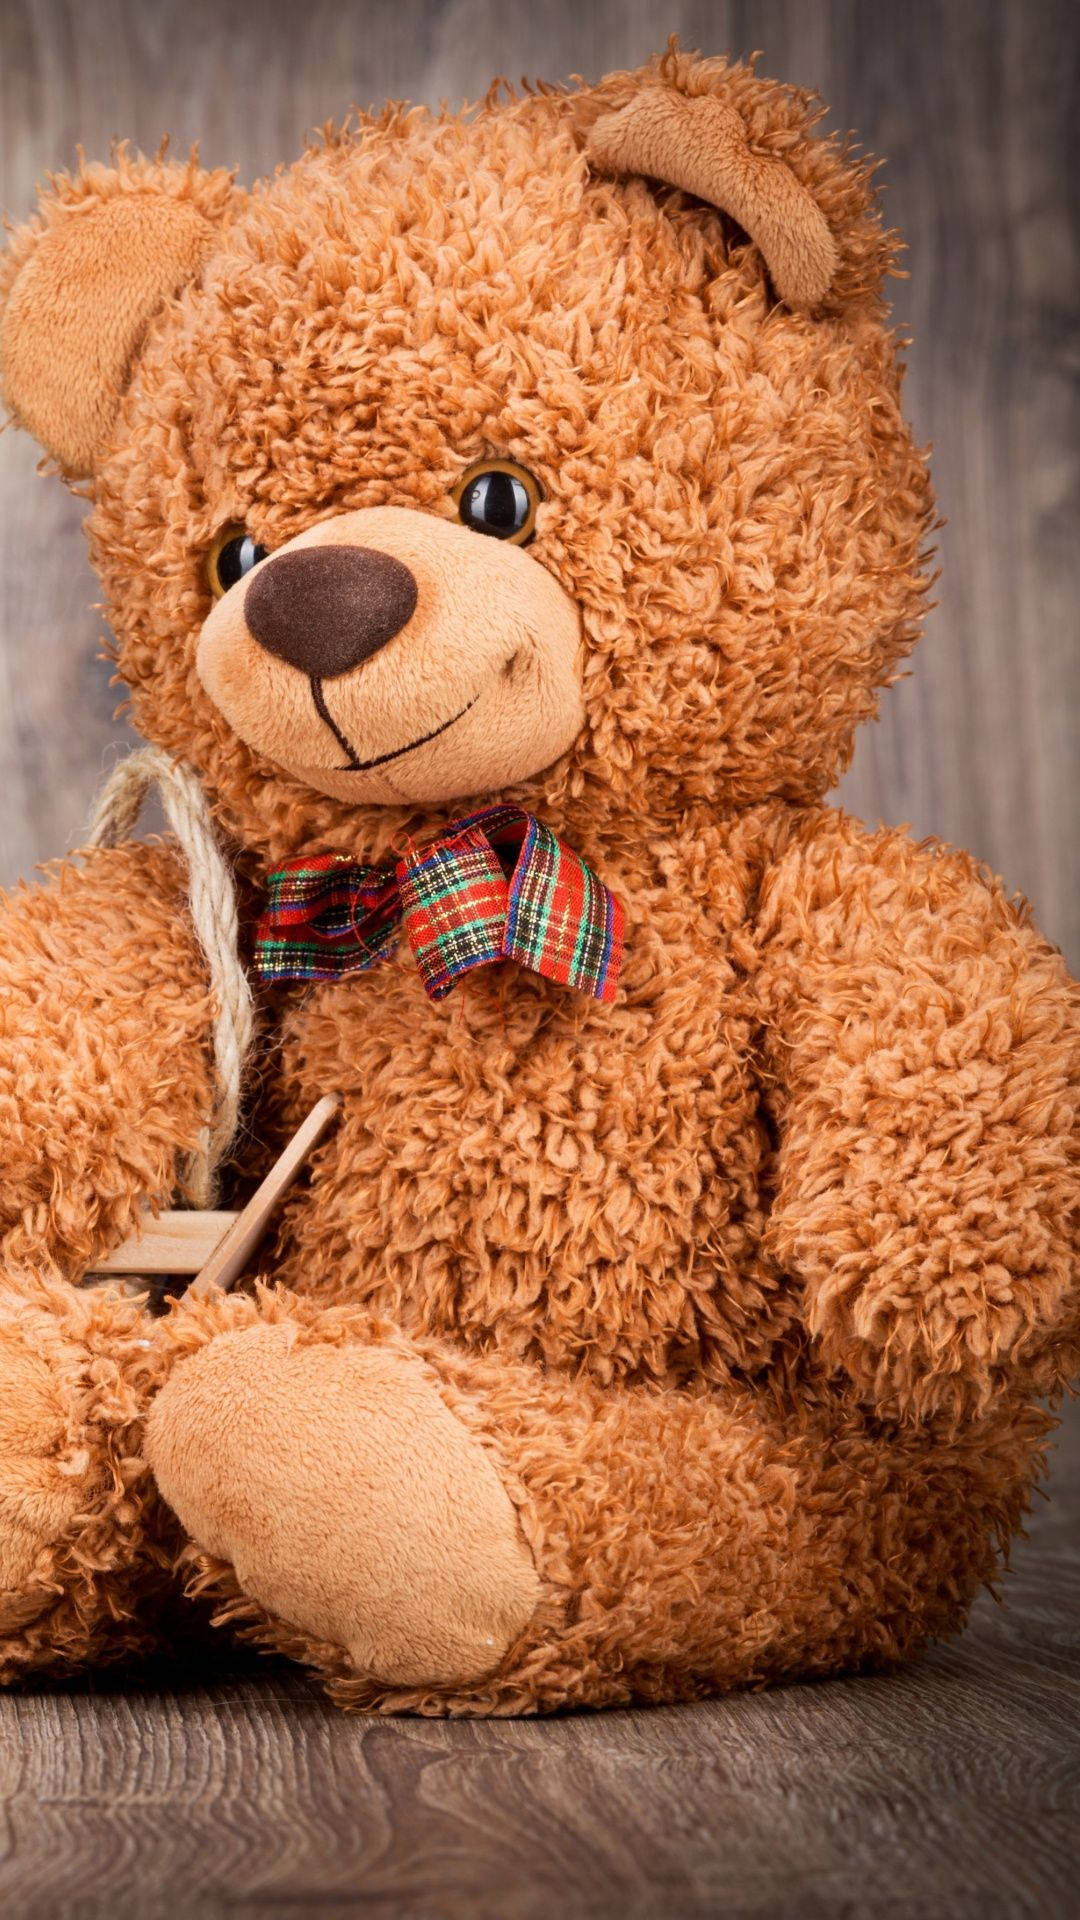 Cuddly Shaggy Brown Teddy Bear Background